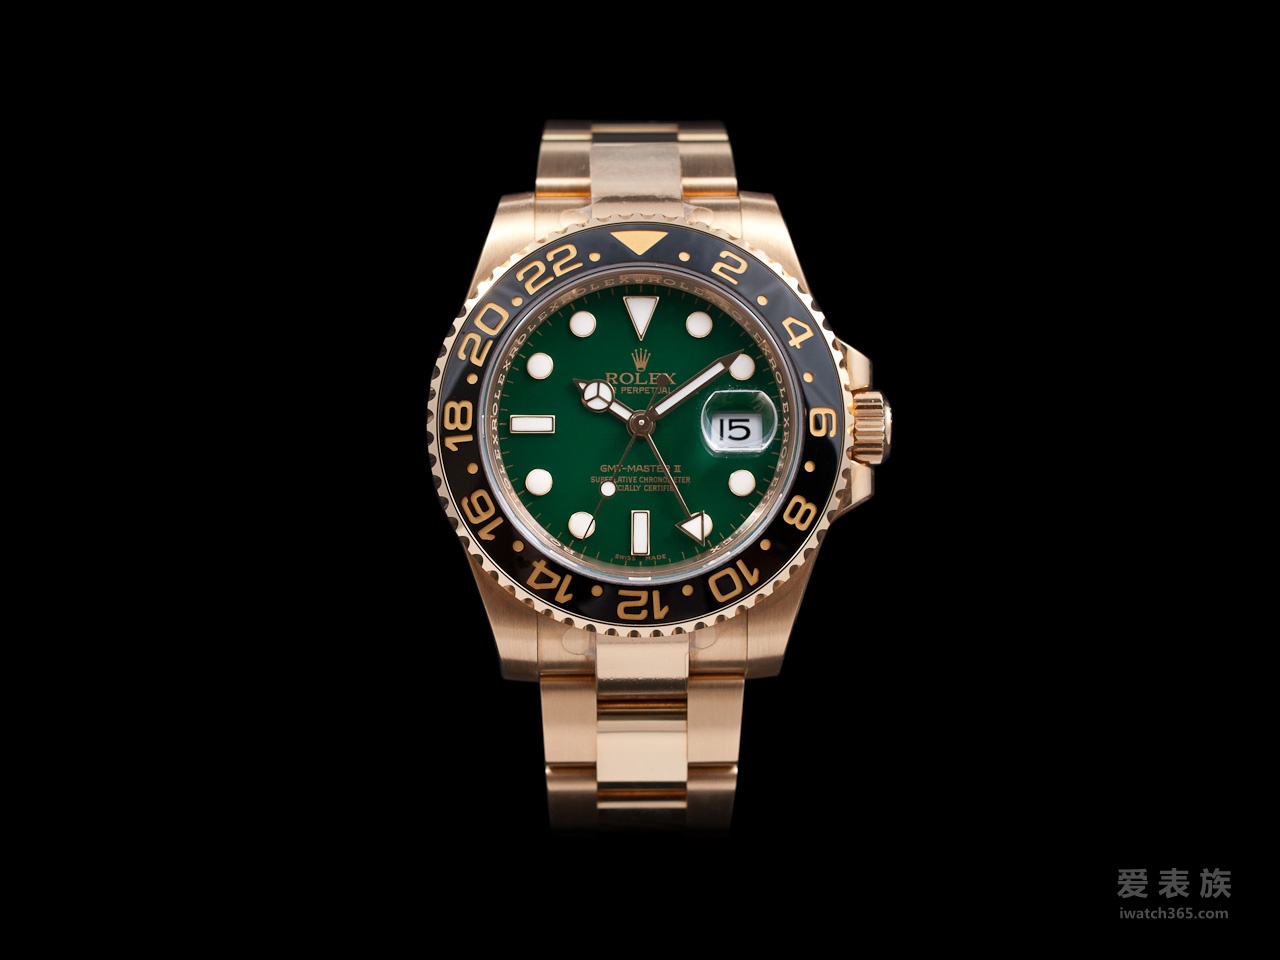 Rolex replica watch